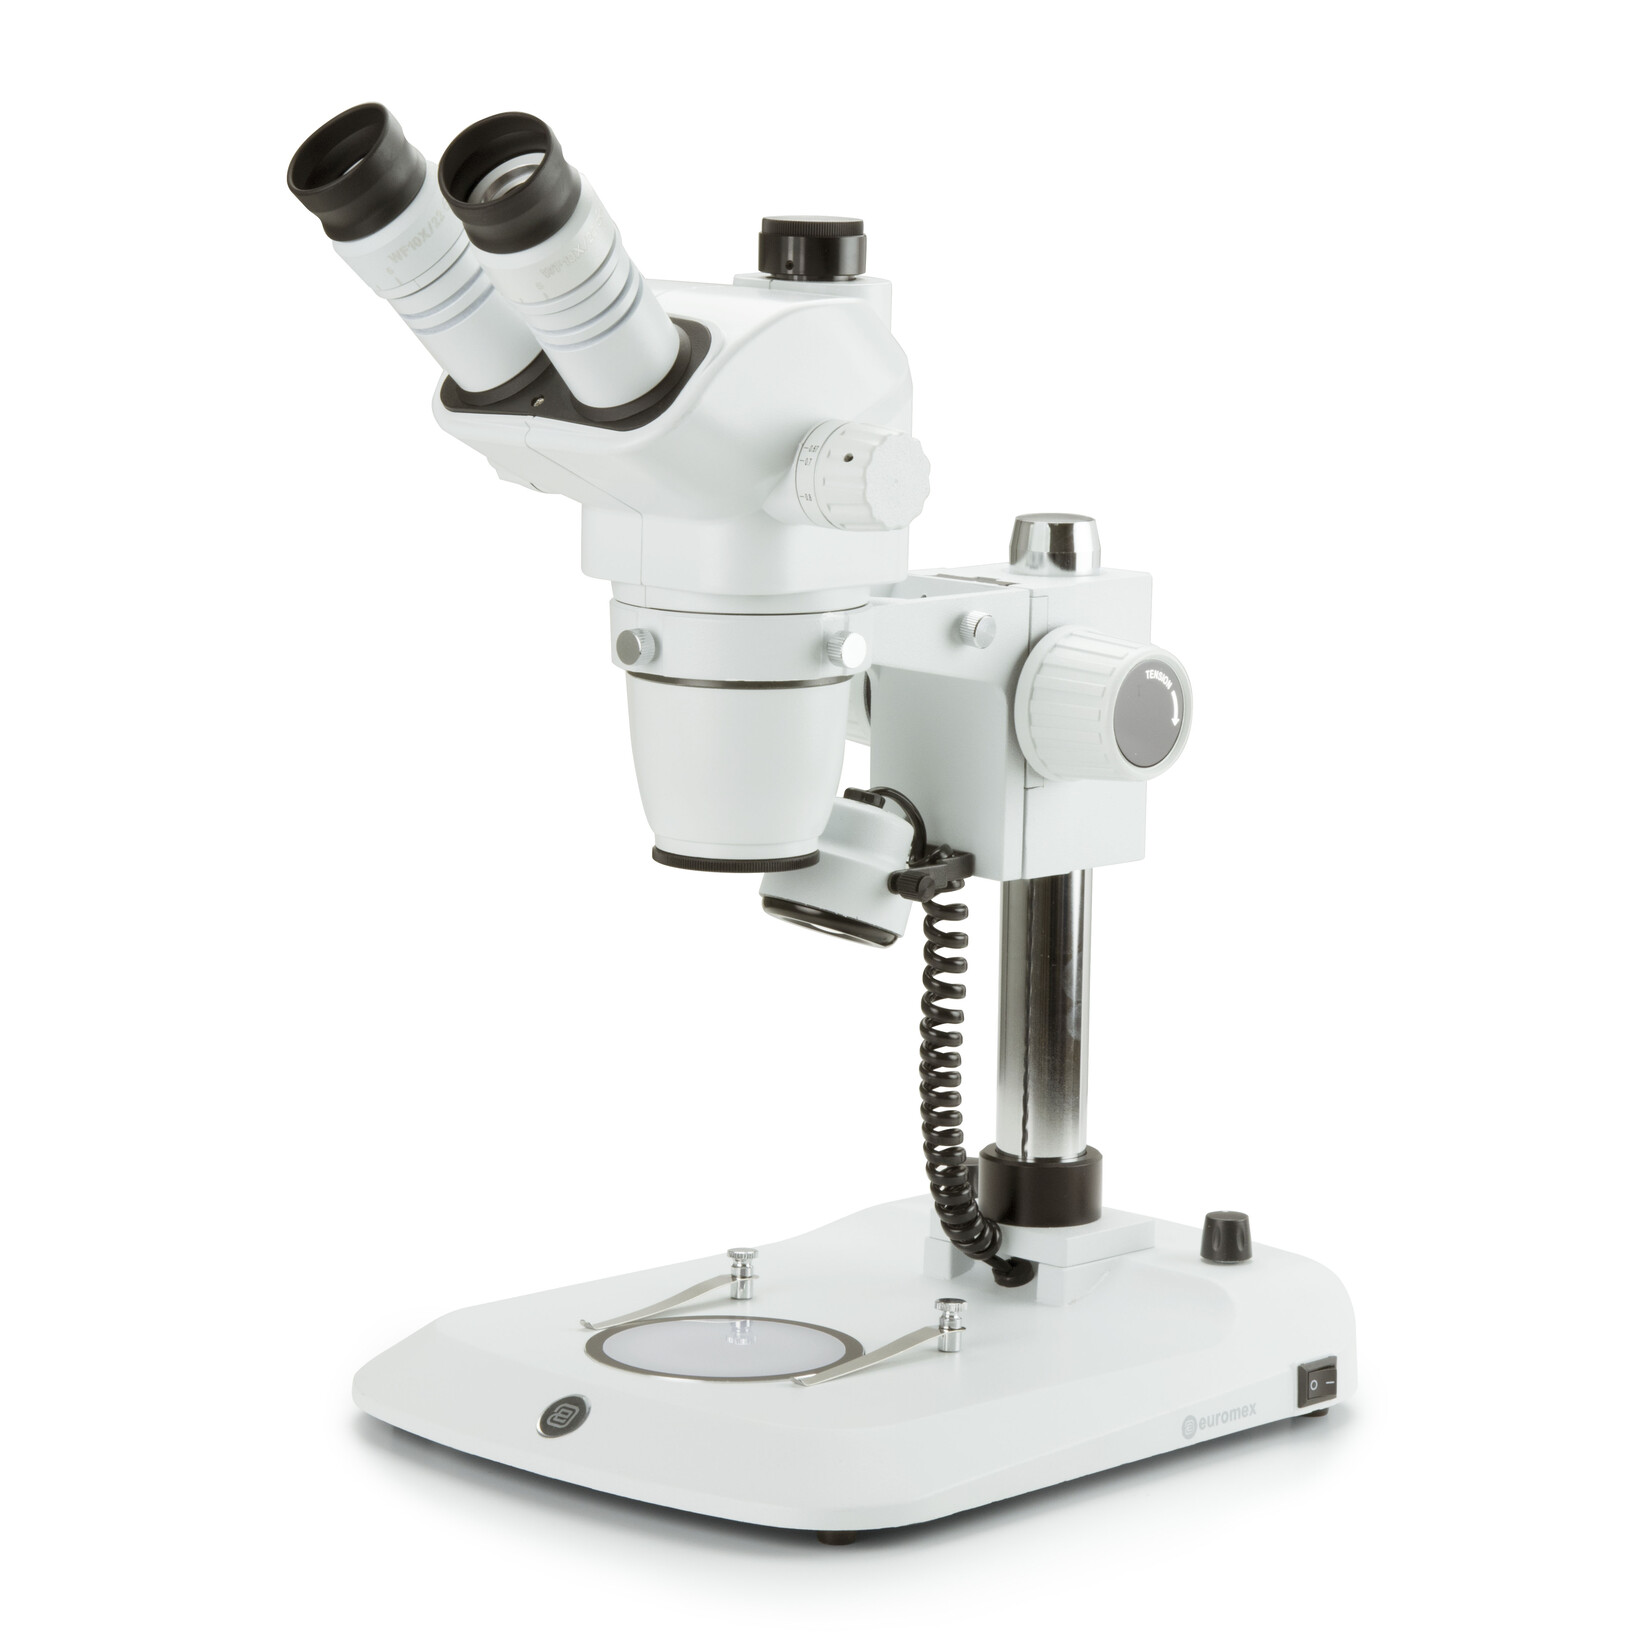 Microscopio stereo zoom trinoculare NexiusZoom EVO, obiettivo da 0,65x a 5,5x